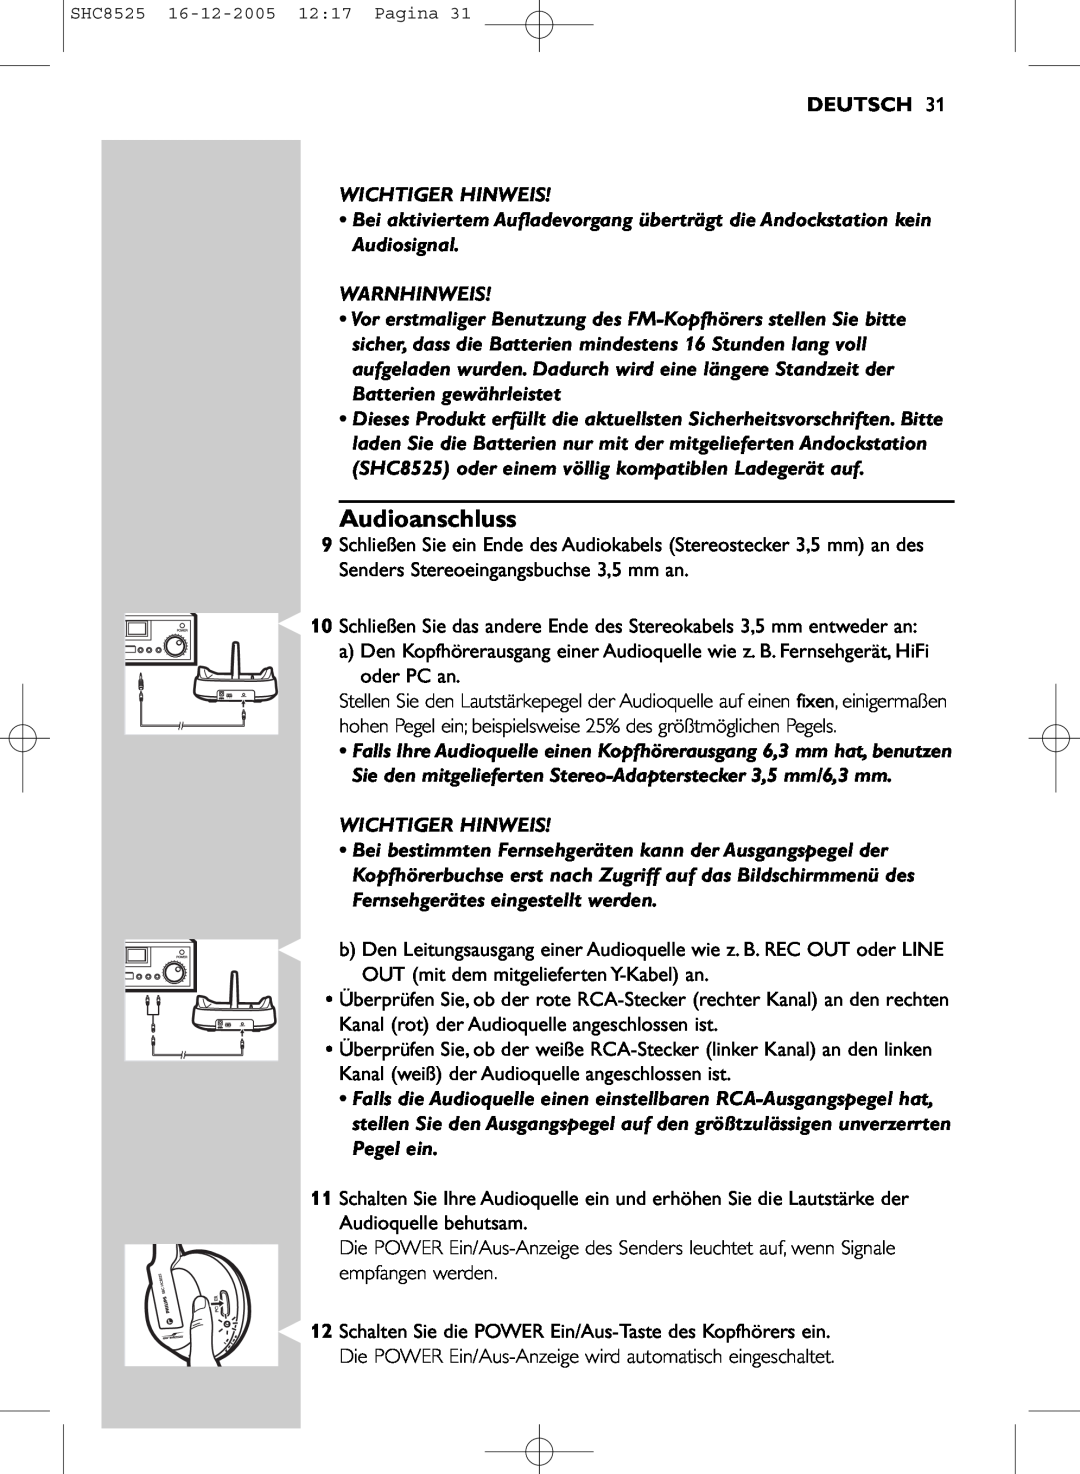 Event electronic SHC8525 manual Audioanschluss, Deutsch 